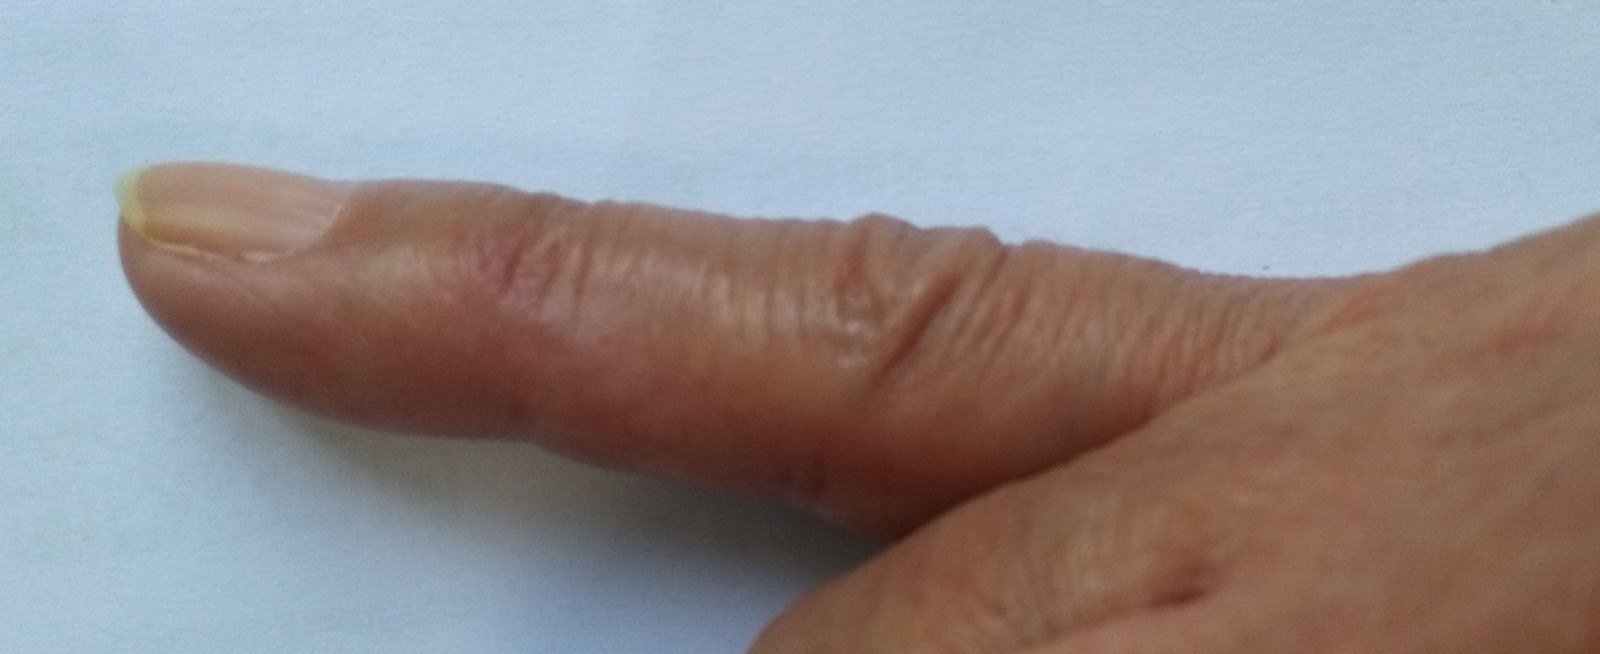 手指血管瘤的治疗 (治疗前后图片比较)